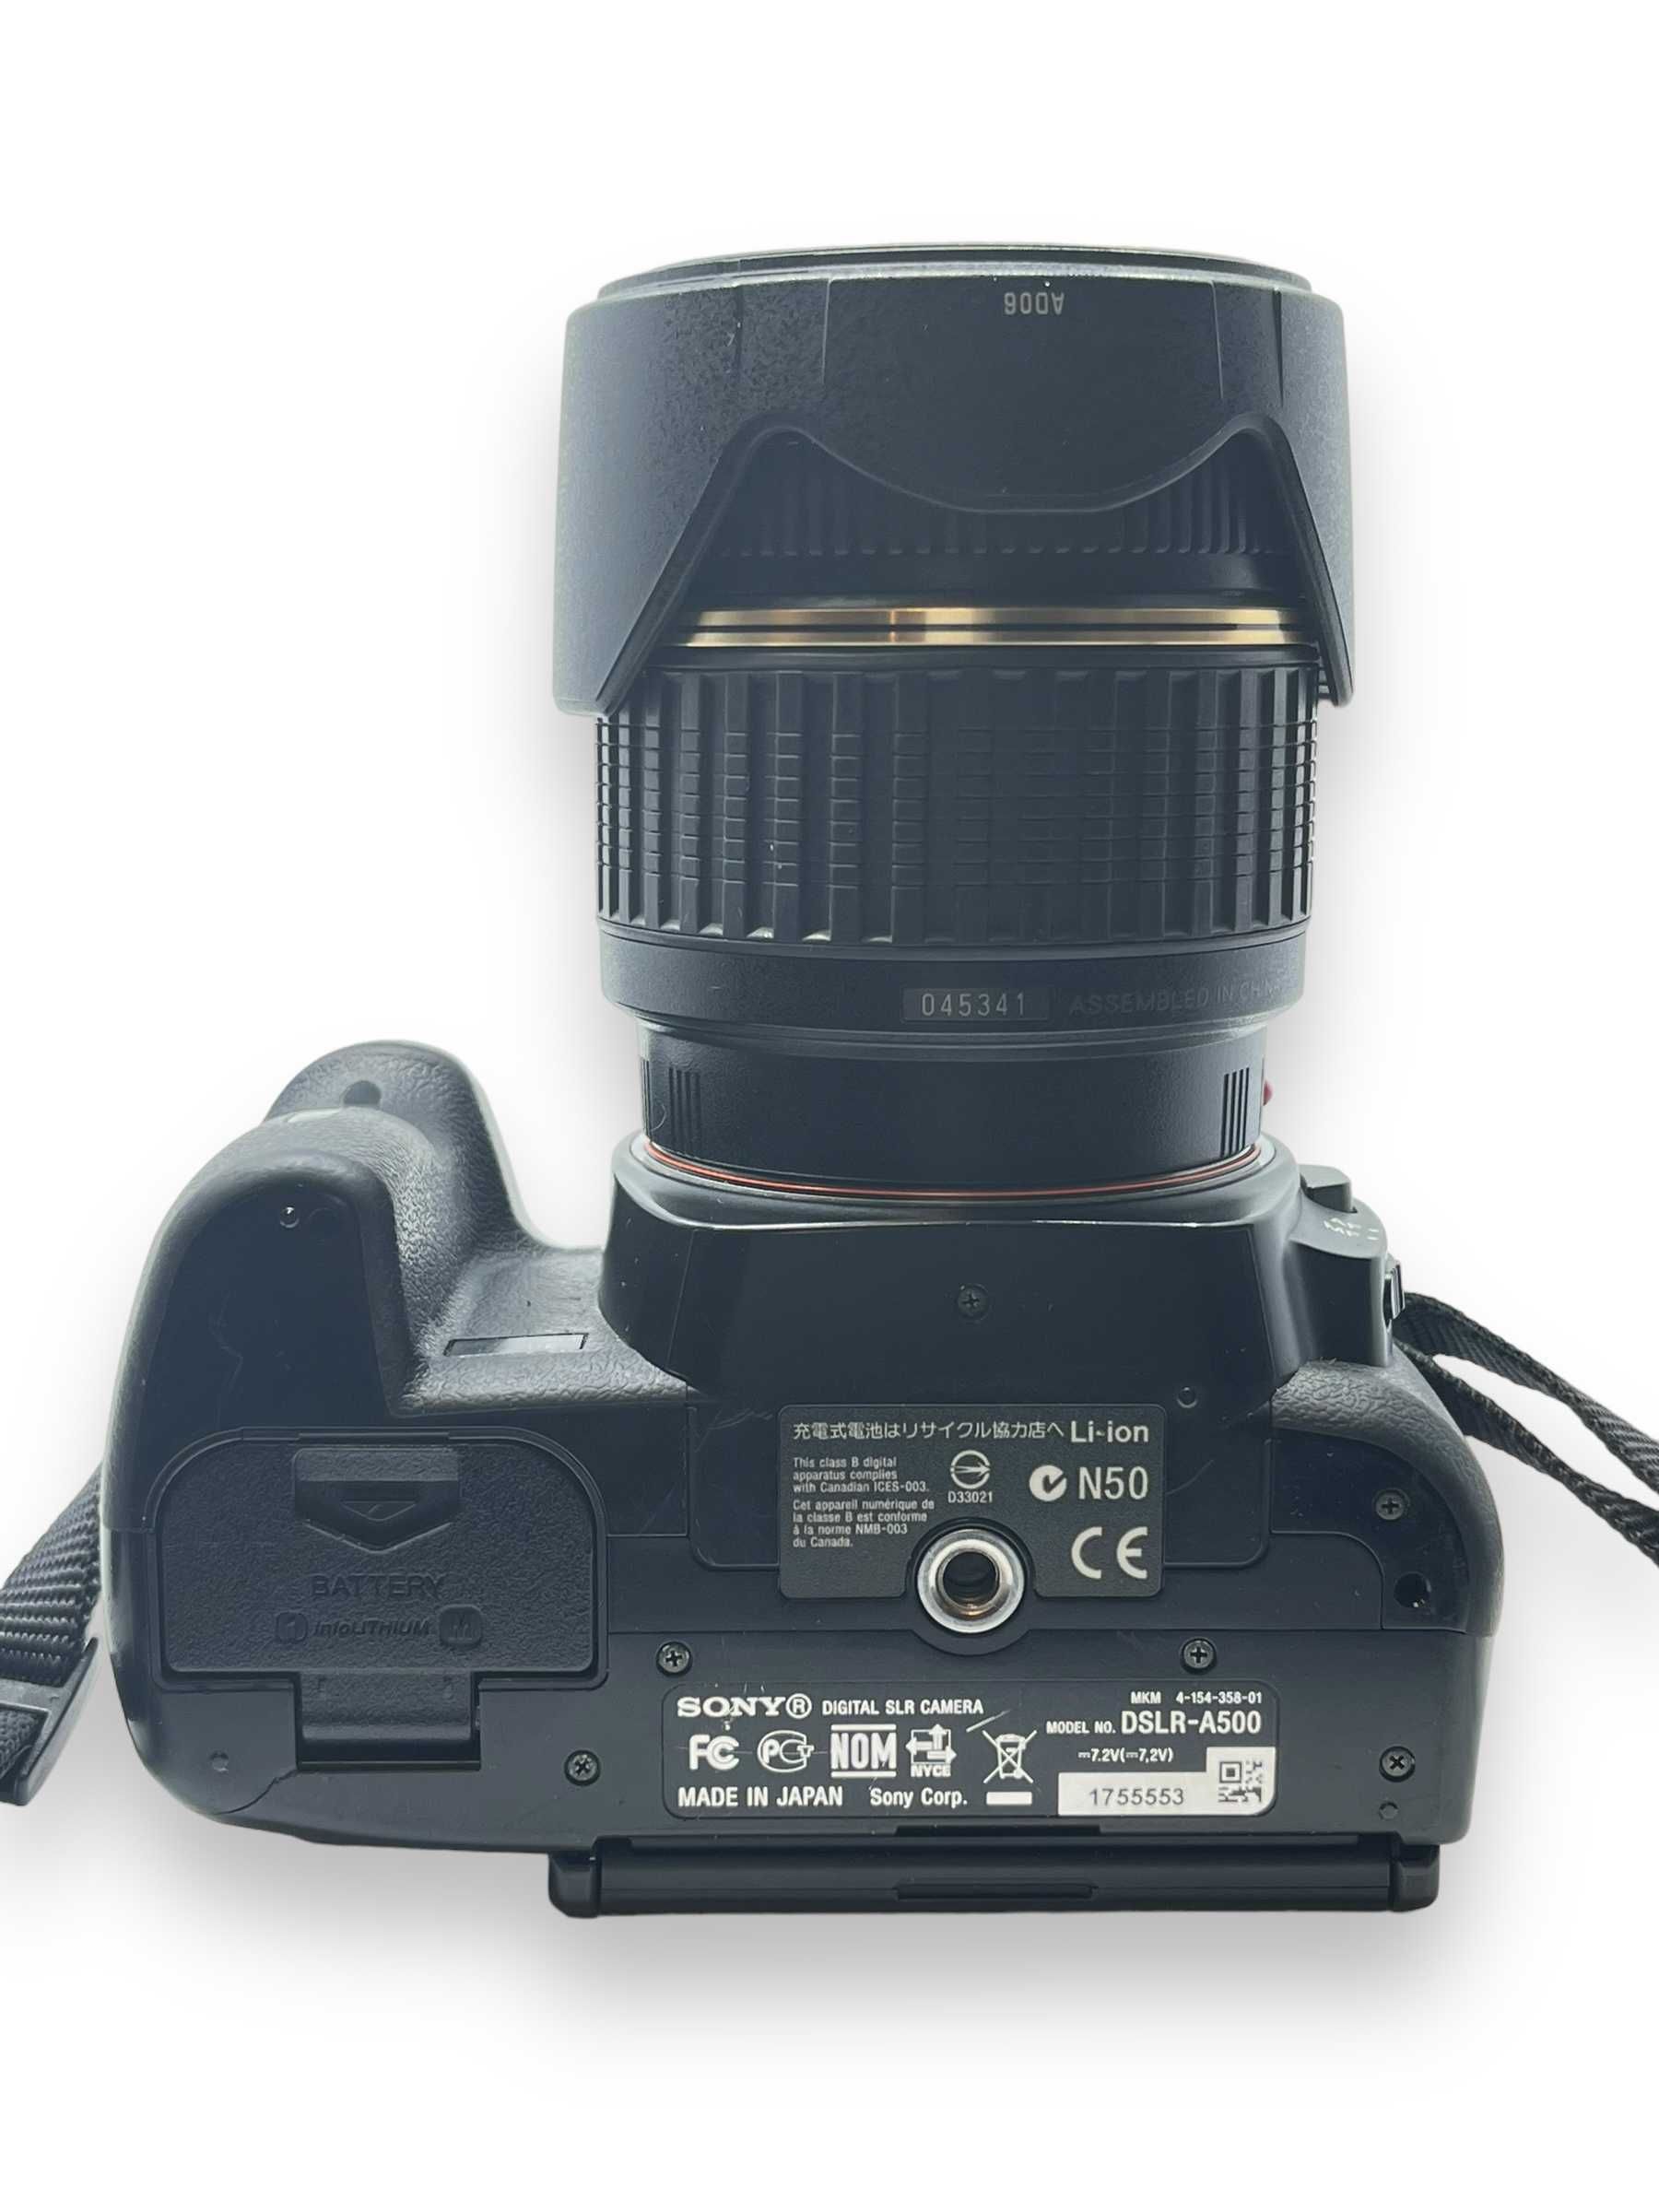 Aparat Sony DSLR-A500 + Obiektyw Tamron 18-200mm